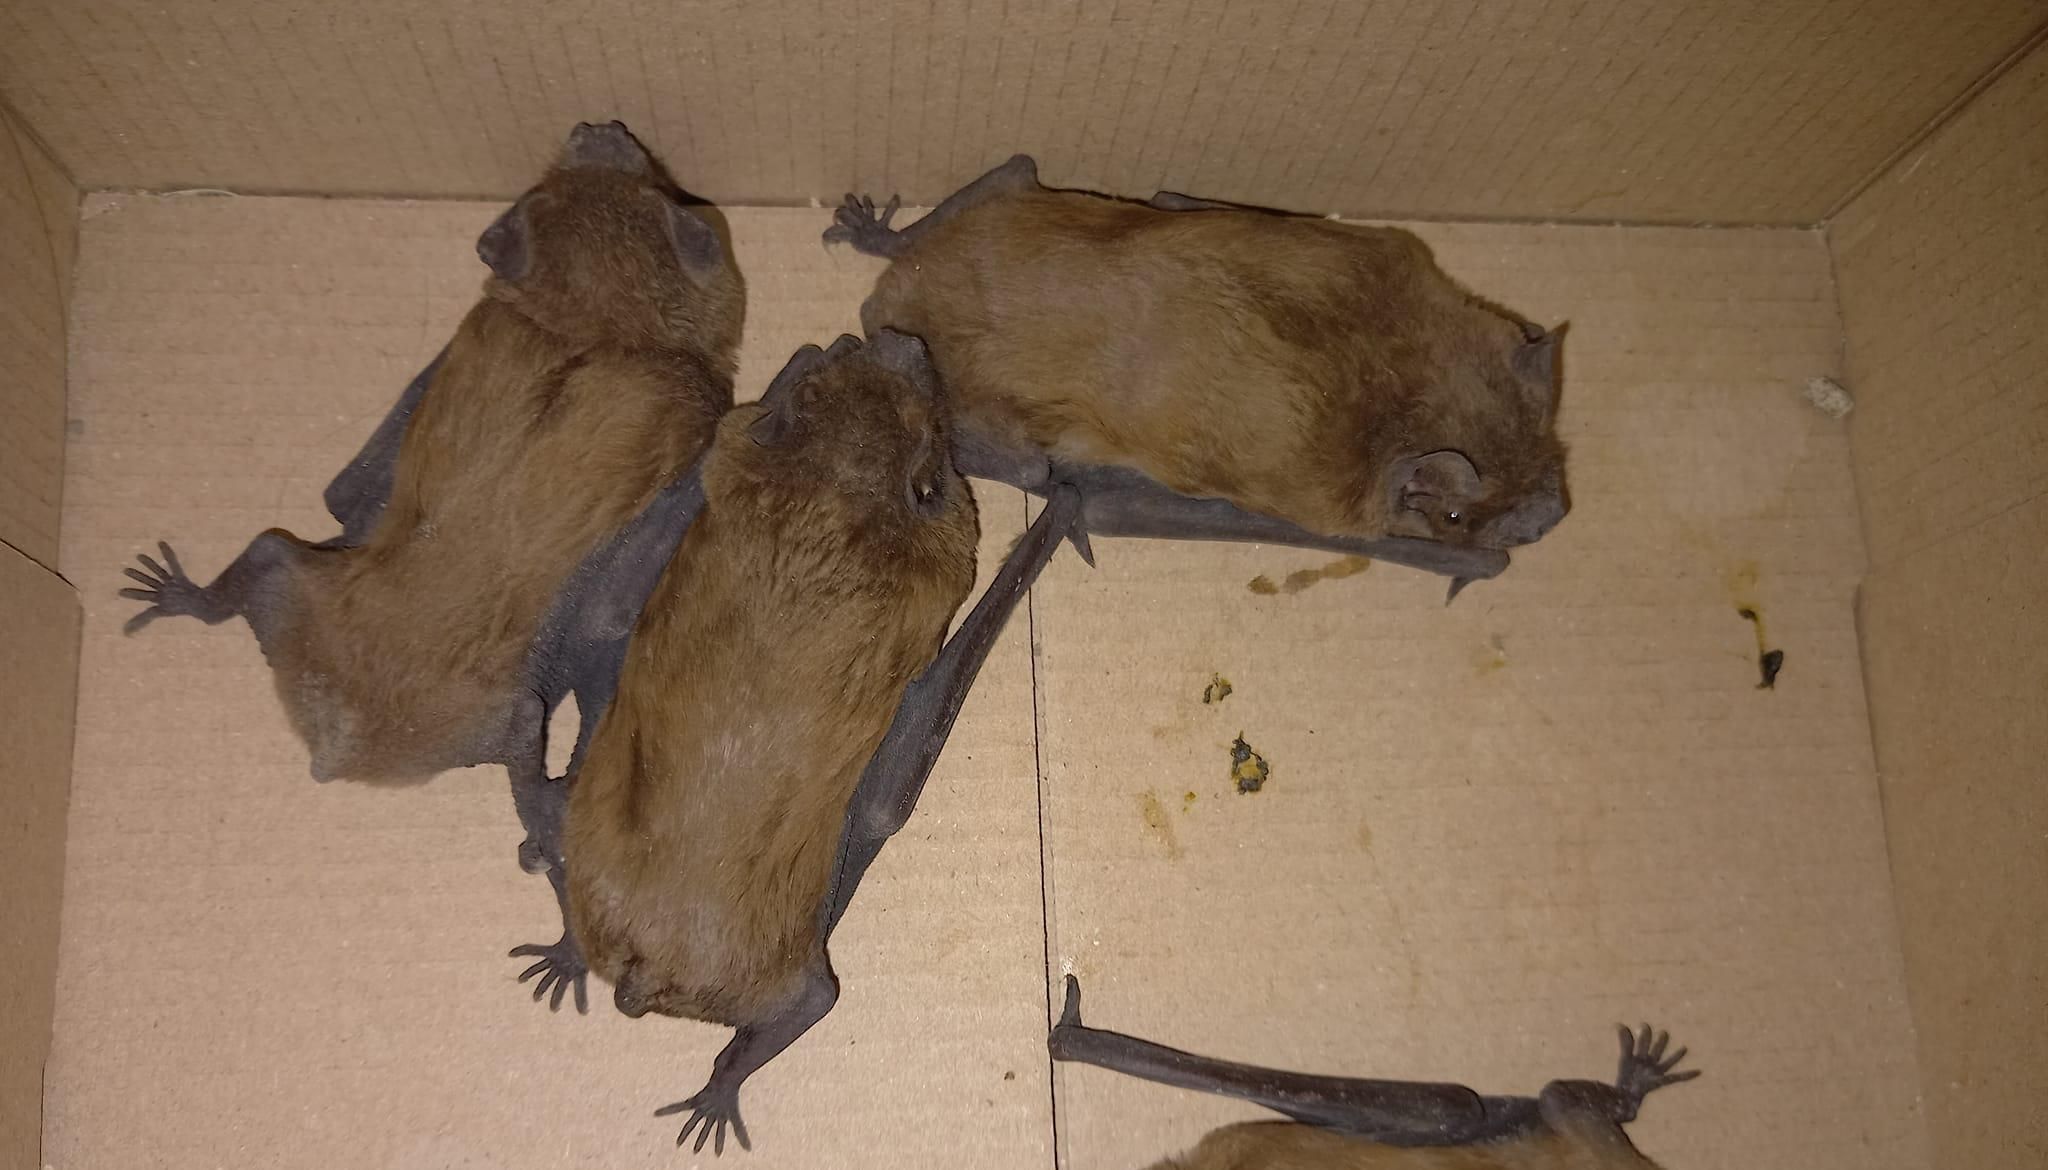 Спрятались среди вещей: в Виннице нашли 40 летучих мышей на балконе - Новости Винница - Pets